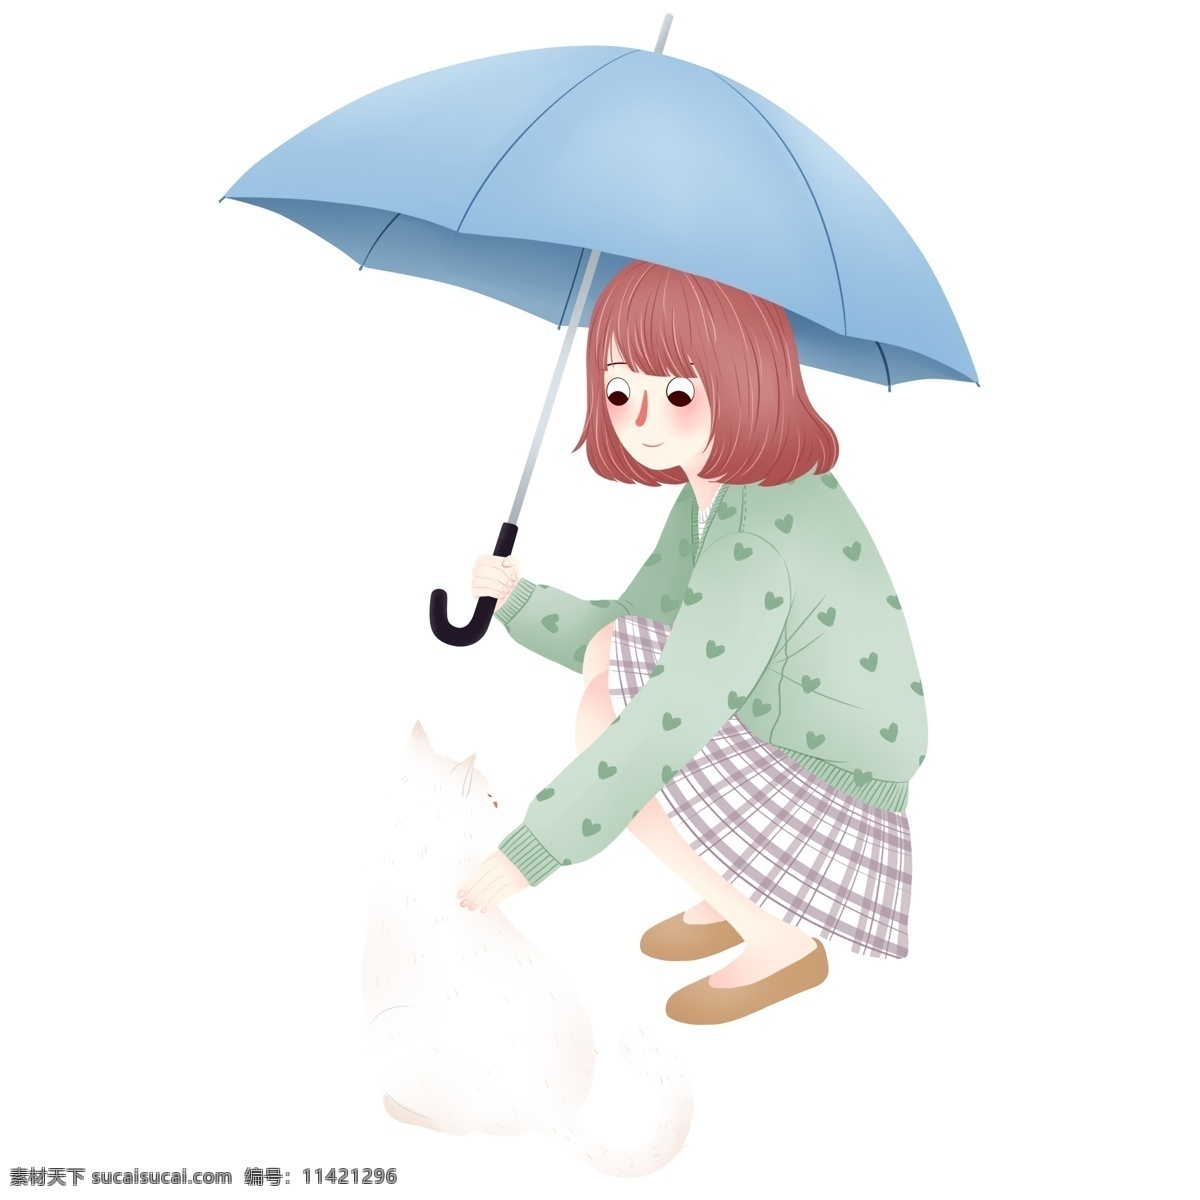 撑 伞 女孩 猫咪 图案 元素 雨伞 卡通 设计元素 简约 手绘 手绘图案 创意元素 手绘元素 psd元素